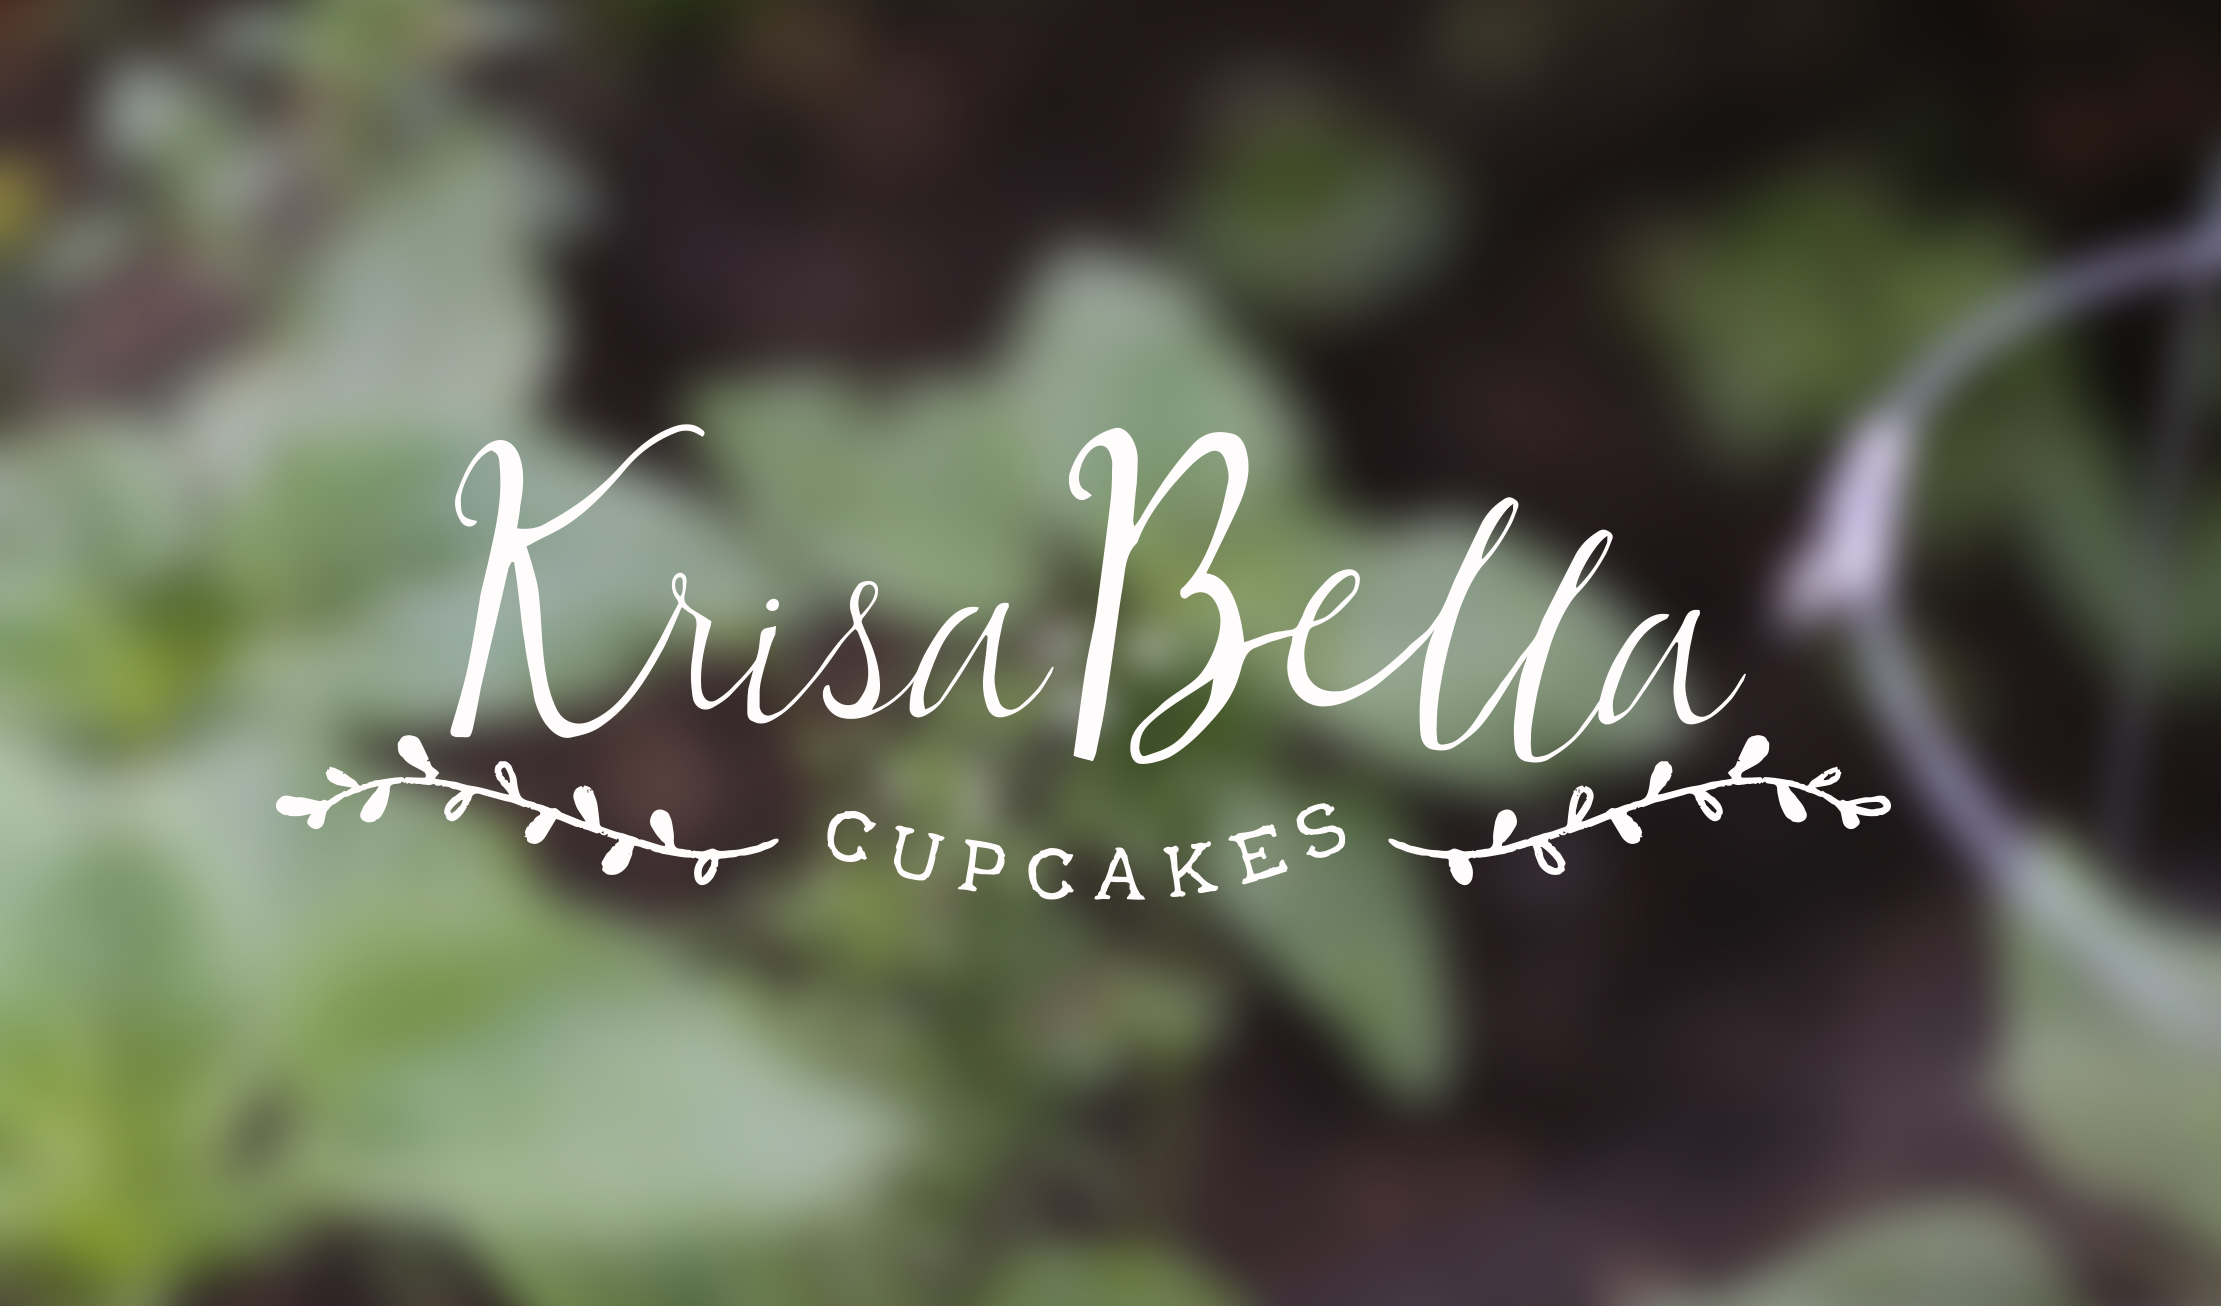 Krisa Bella Cupcakes Branding by Just Make Things